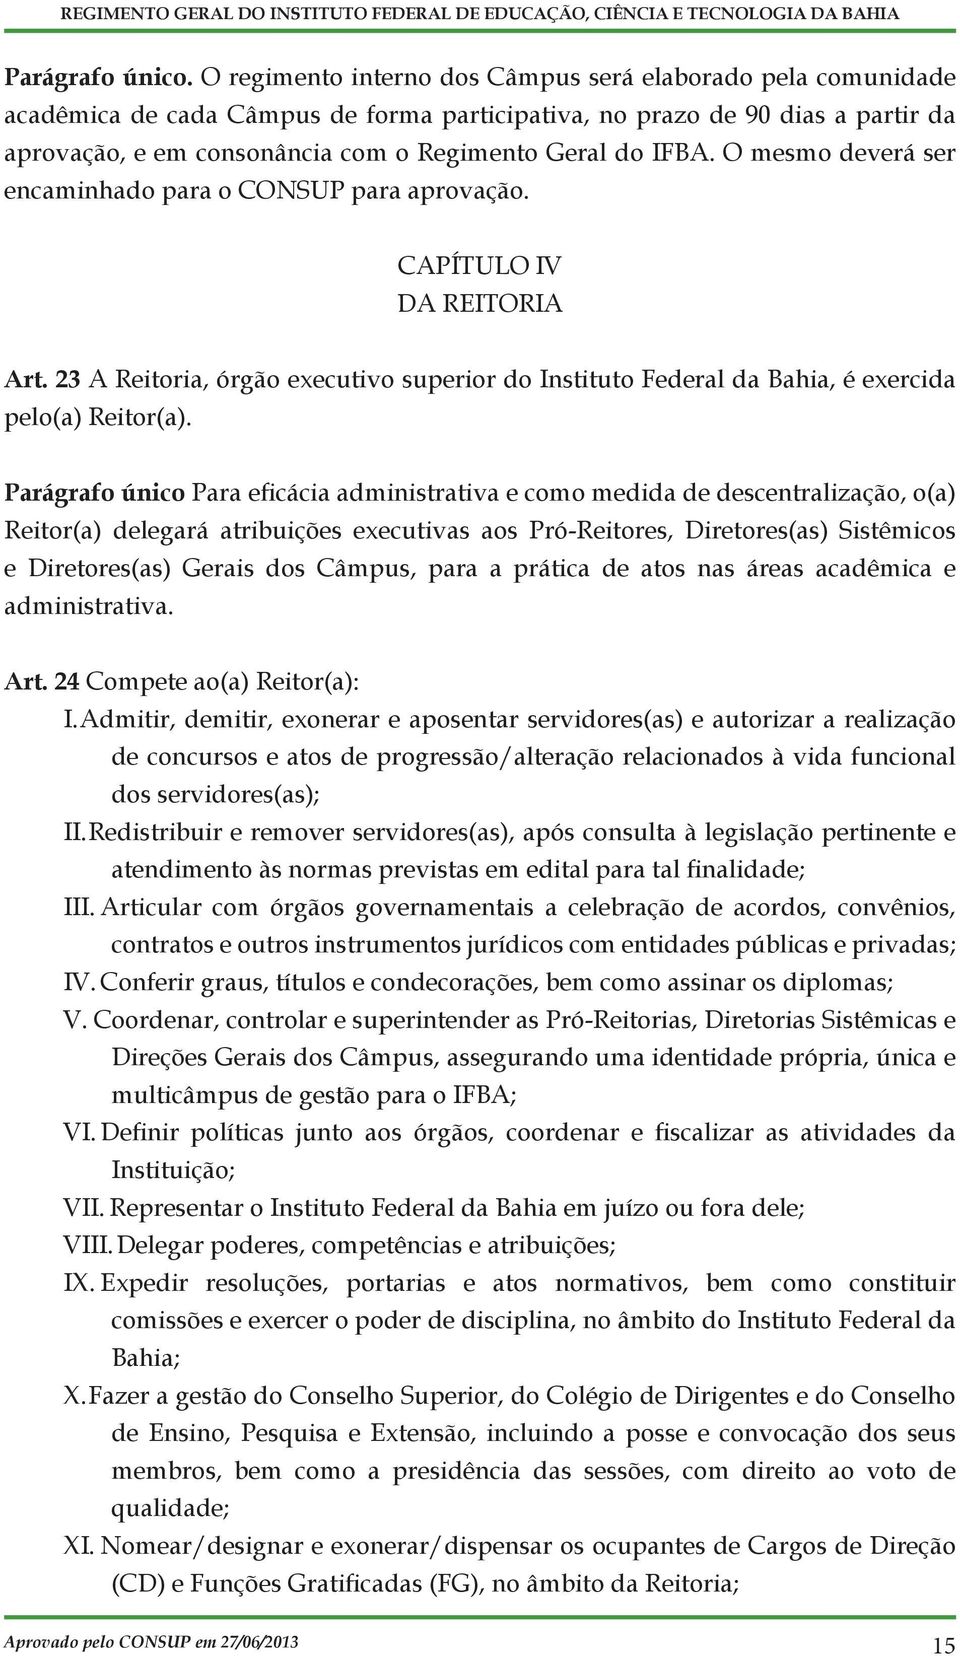 IFBA. O mesmo deverá ser encaminhado para o CONSUP para aprovação. CAPÍTULO IV DA REITORIA Art. 23 A Reitoria, órgão executivo superior do Instituto Federal da Bahia, é exercida pelo(a) Reitor(a).